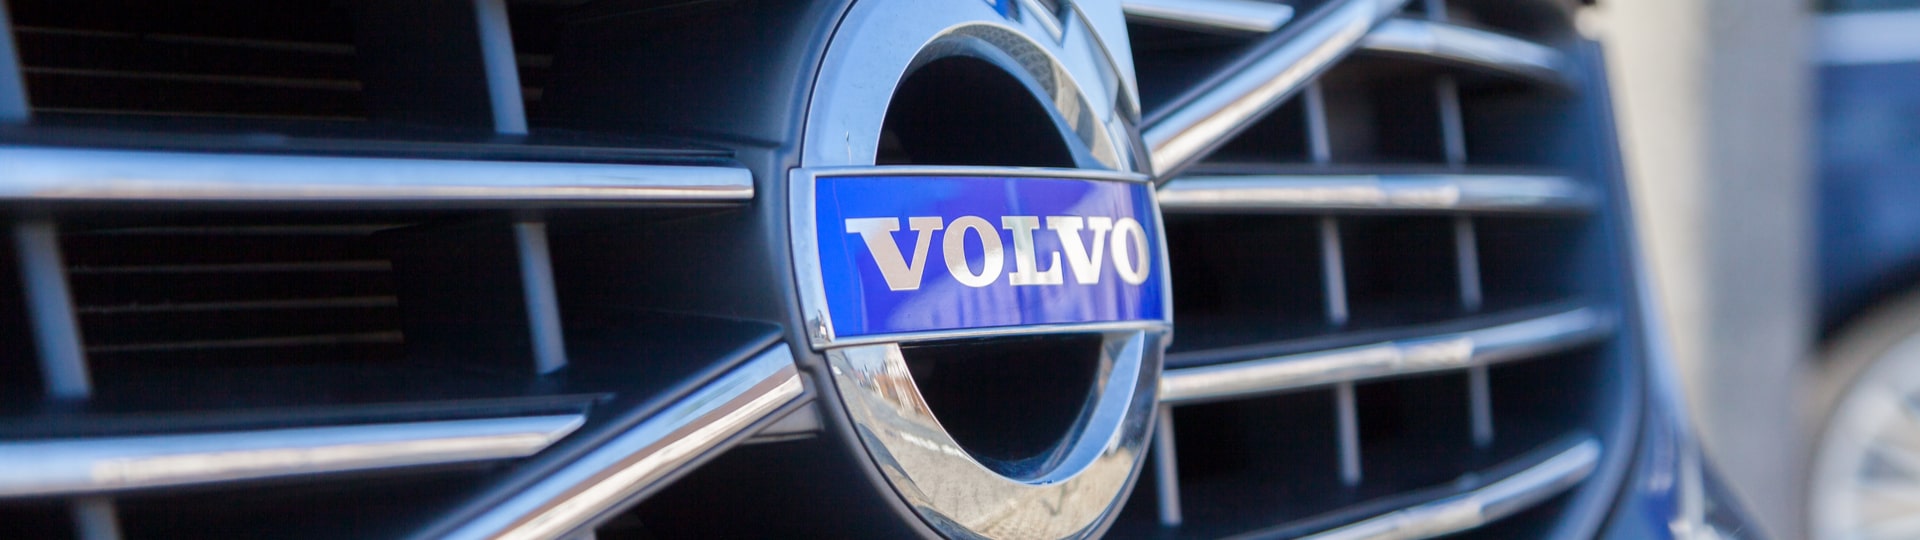 Cena akcií Volvo Cars bude při vstupu na burzu proti plánům nižší